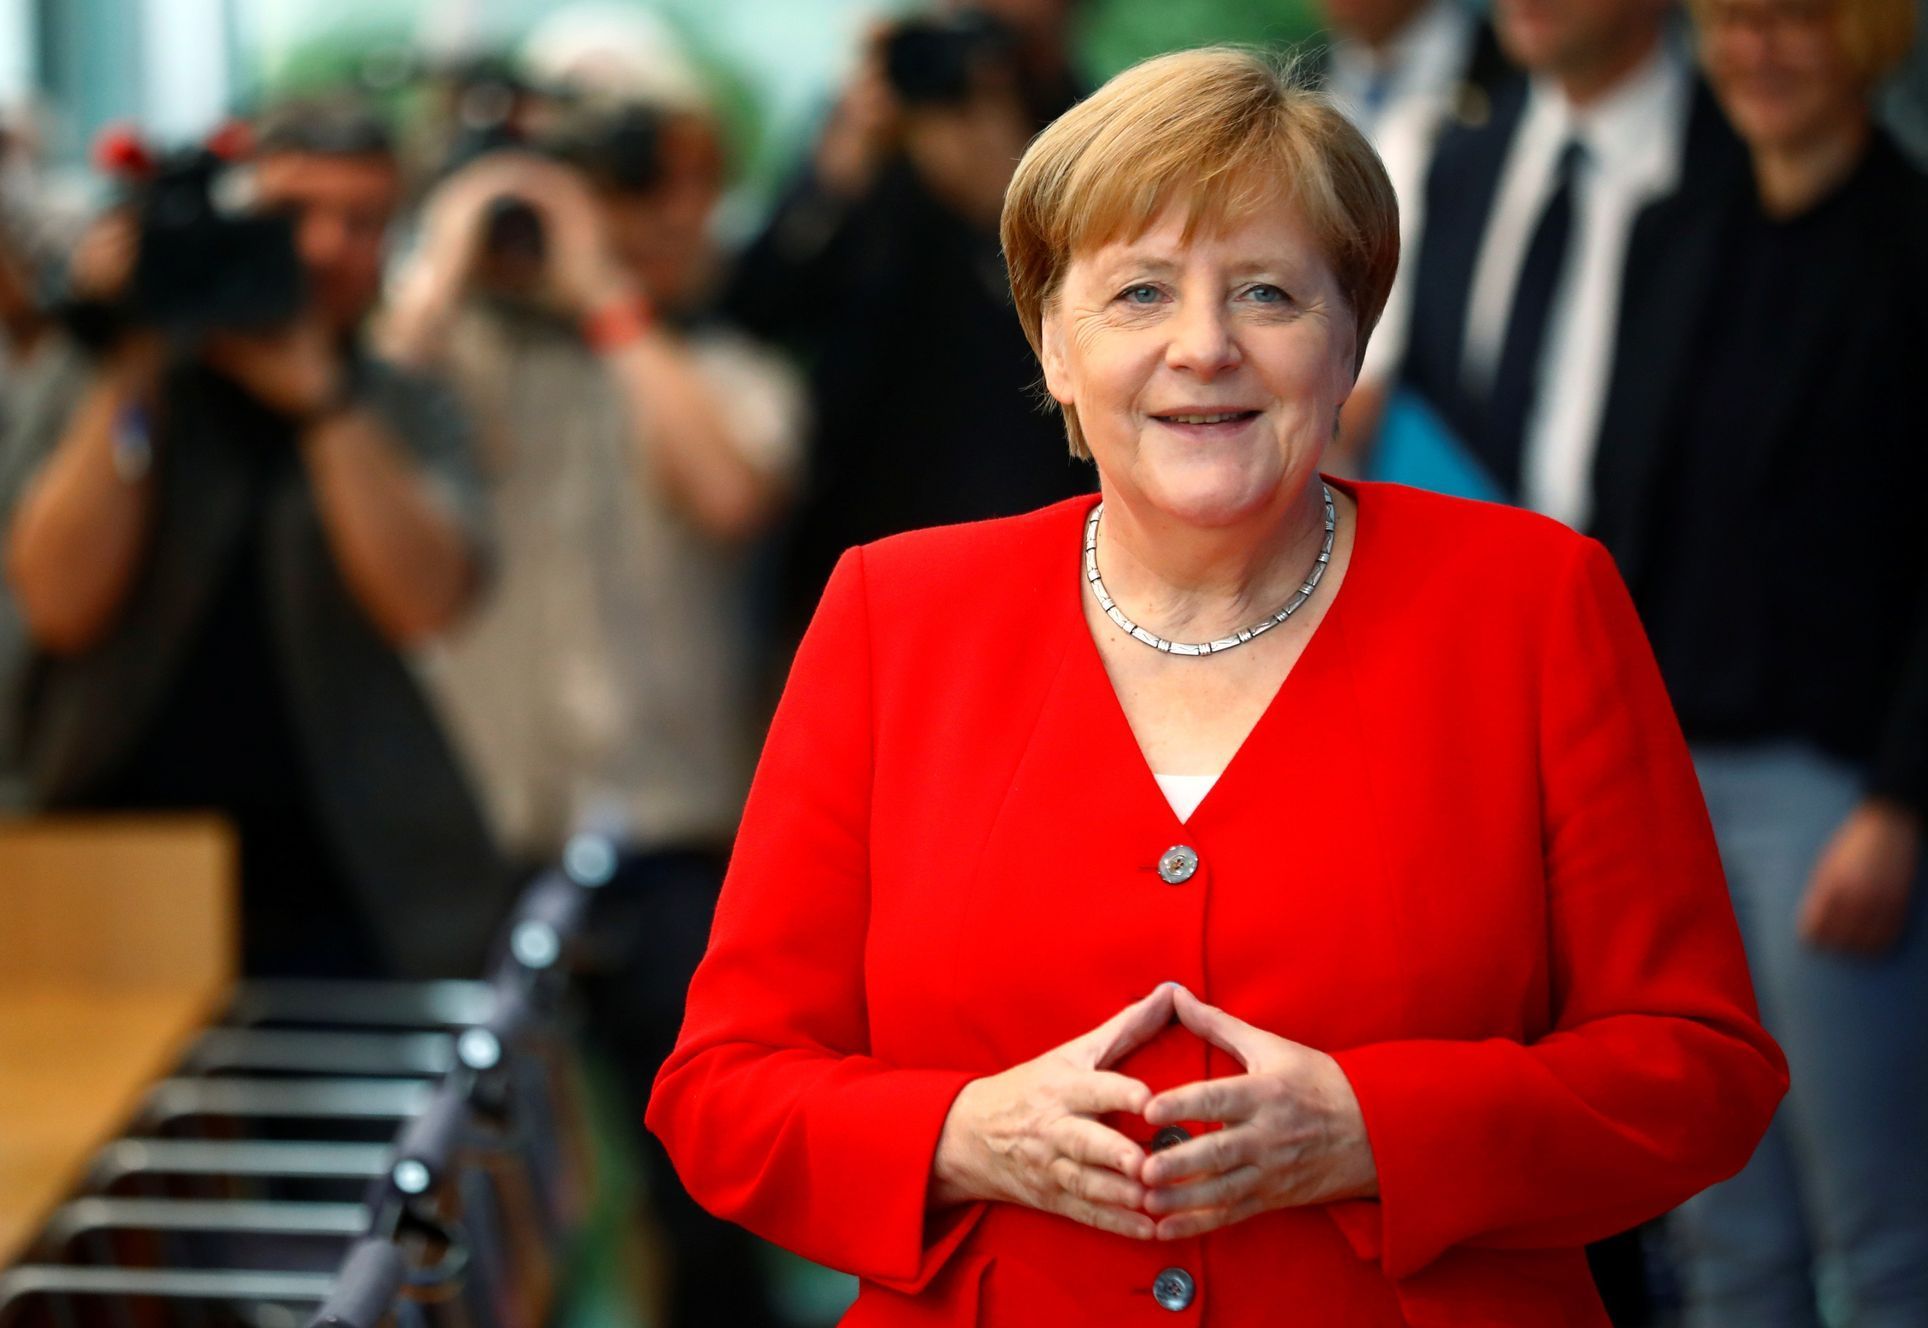 Německá kancléřka Angela Merkelová na tiskové konferenci